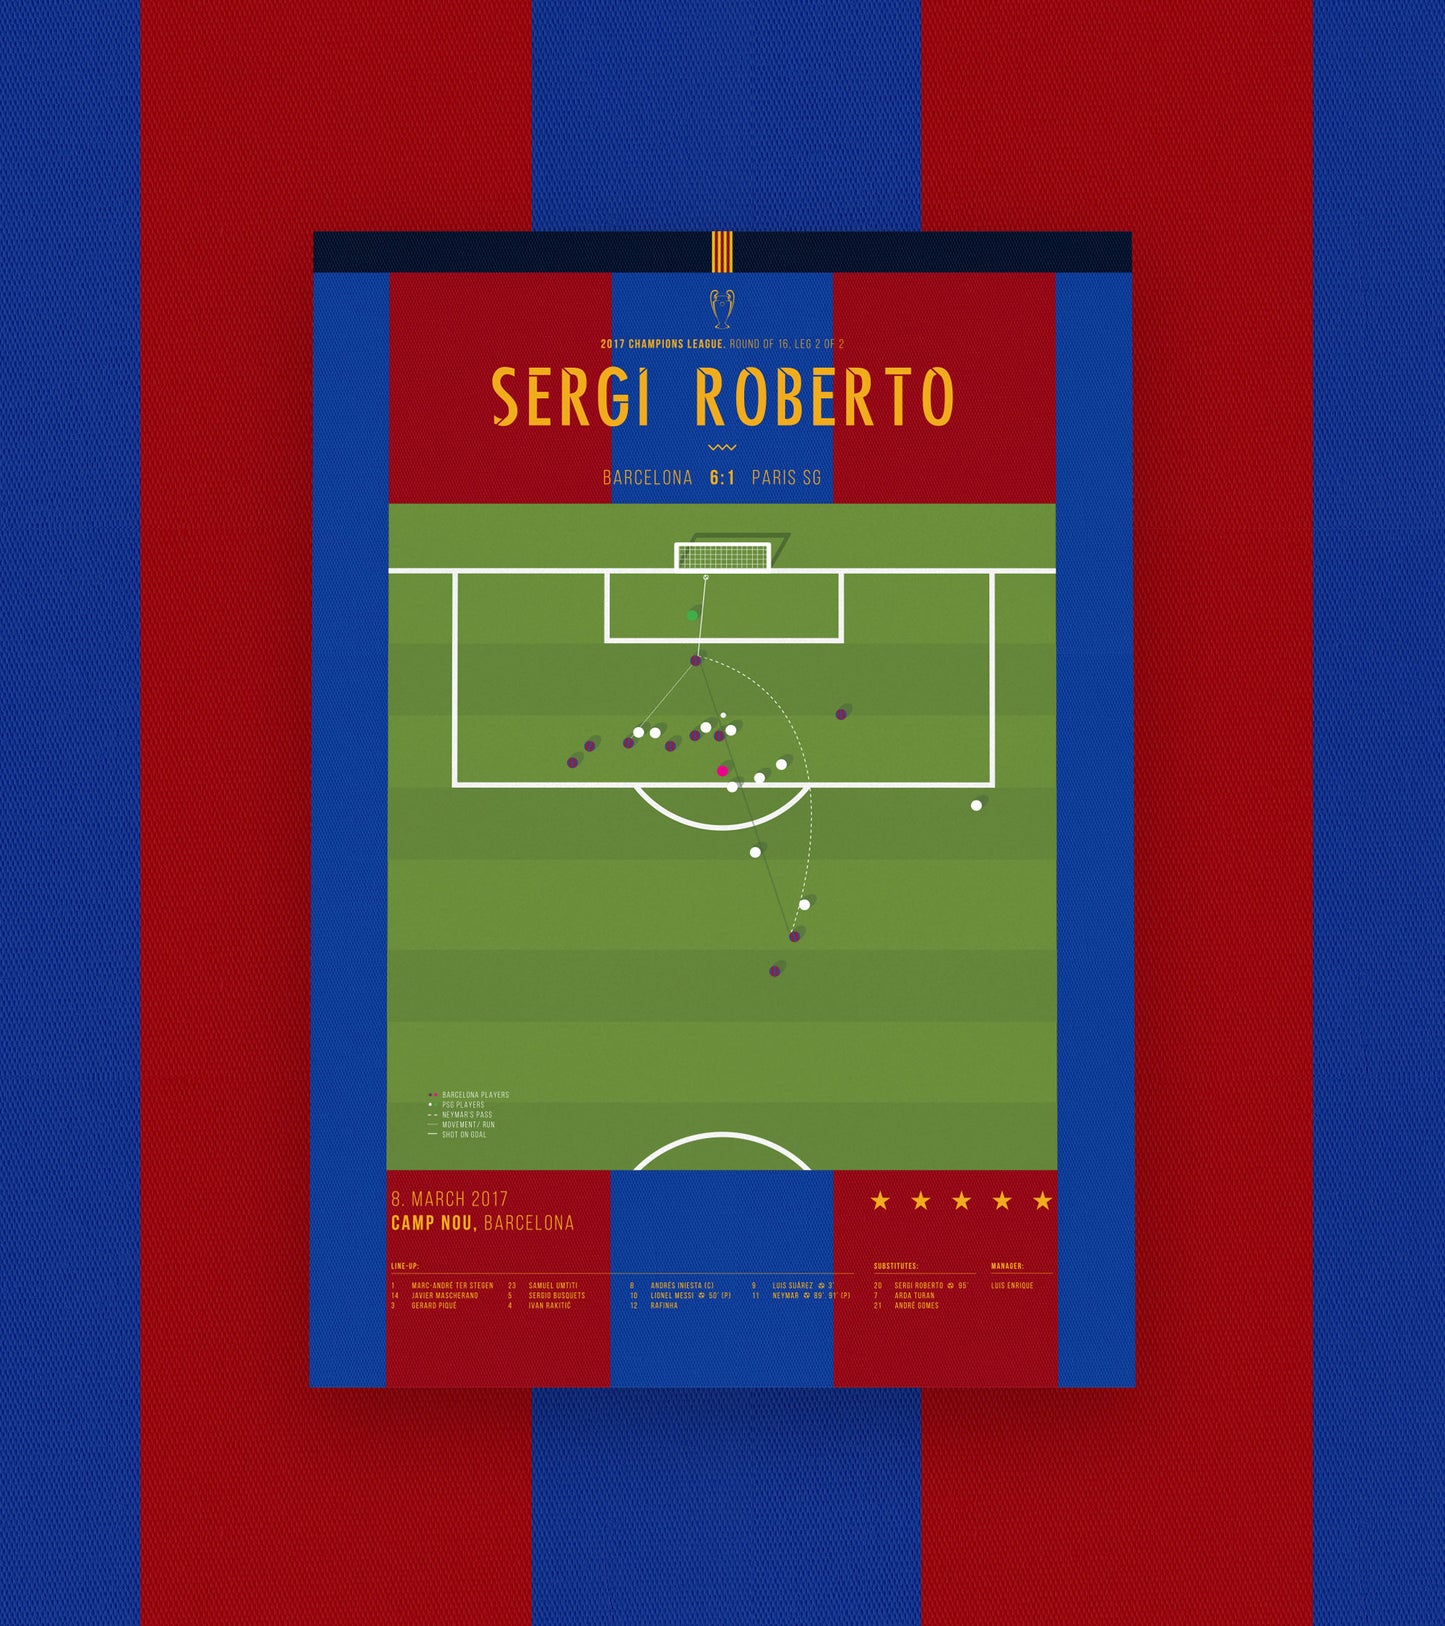 Sergi Roberto marque pour terminer son retour historique à Barcelone